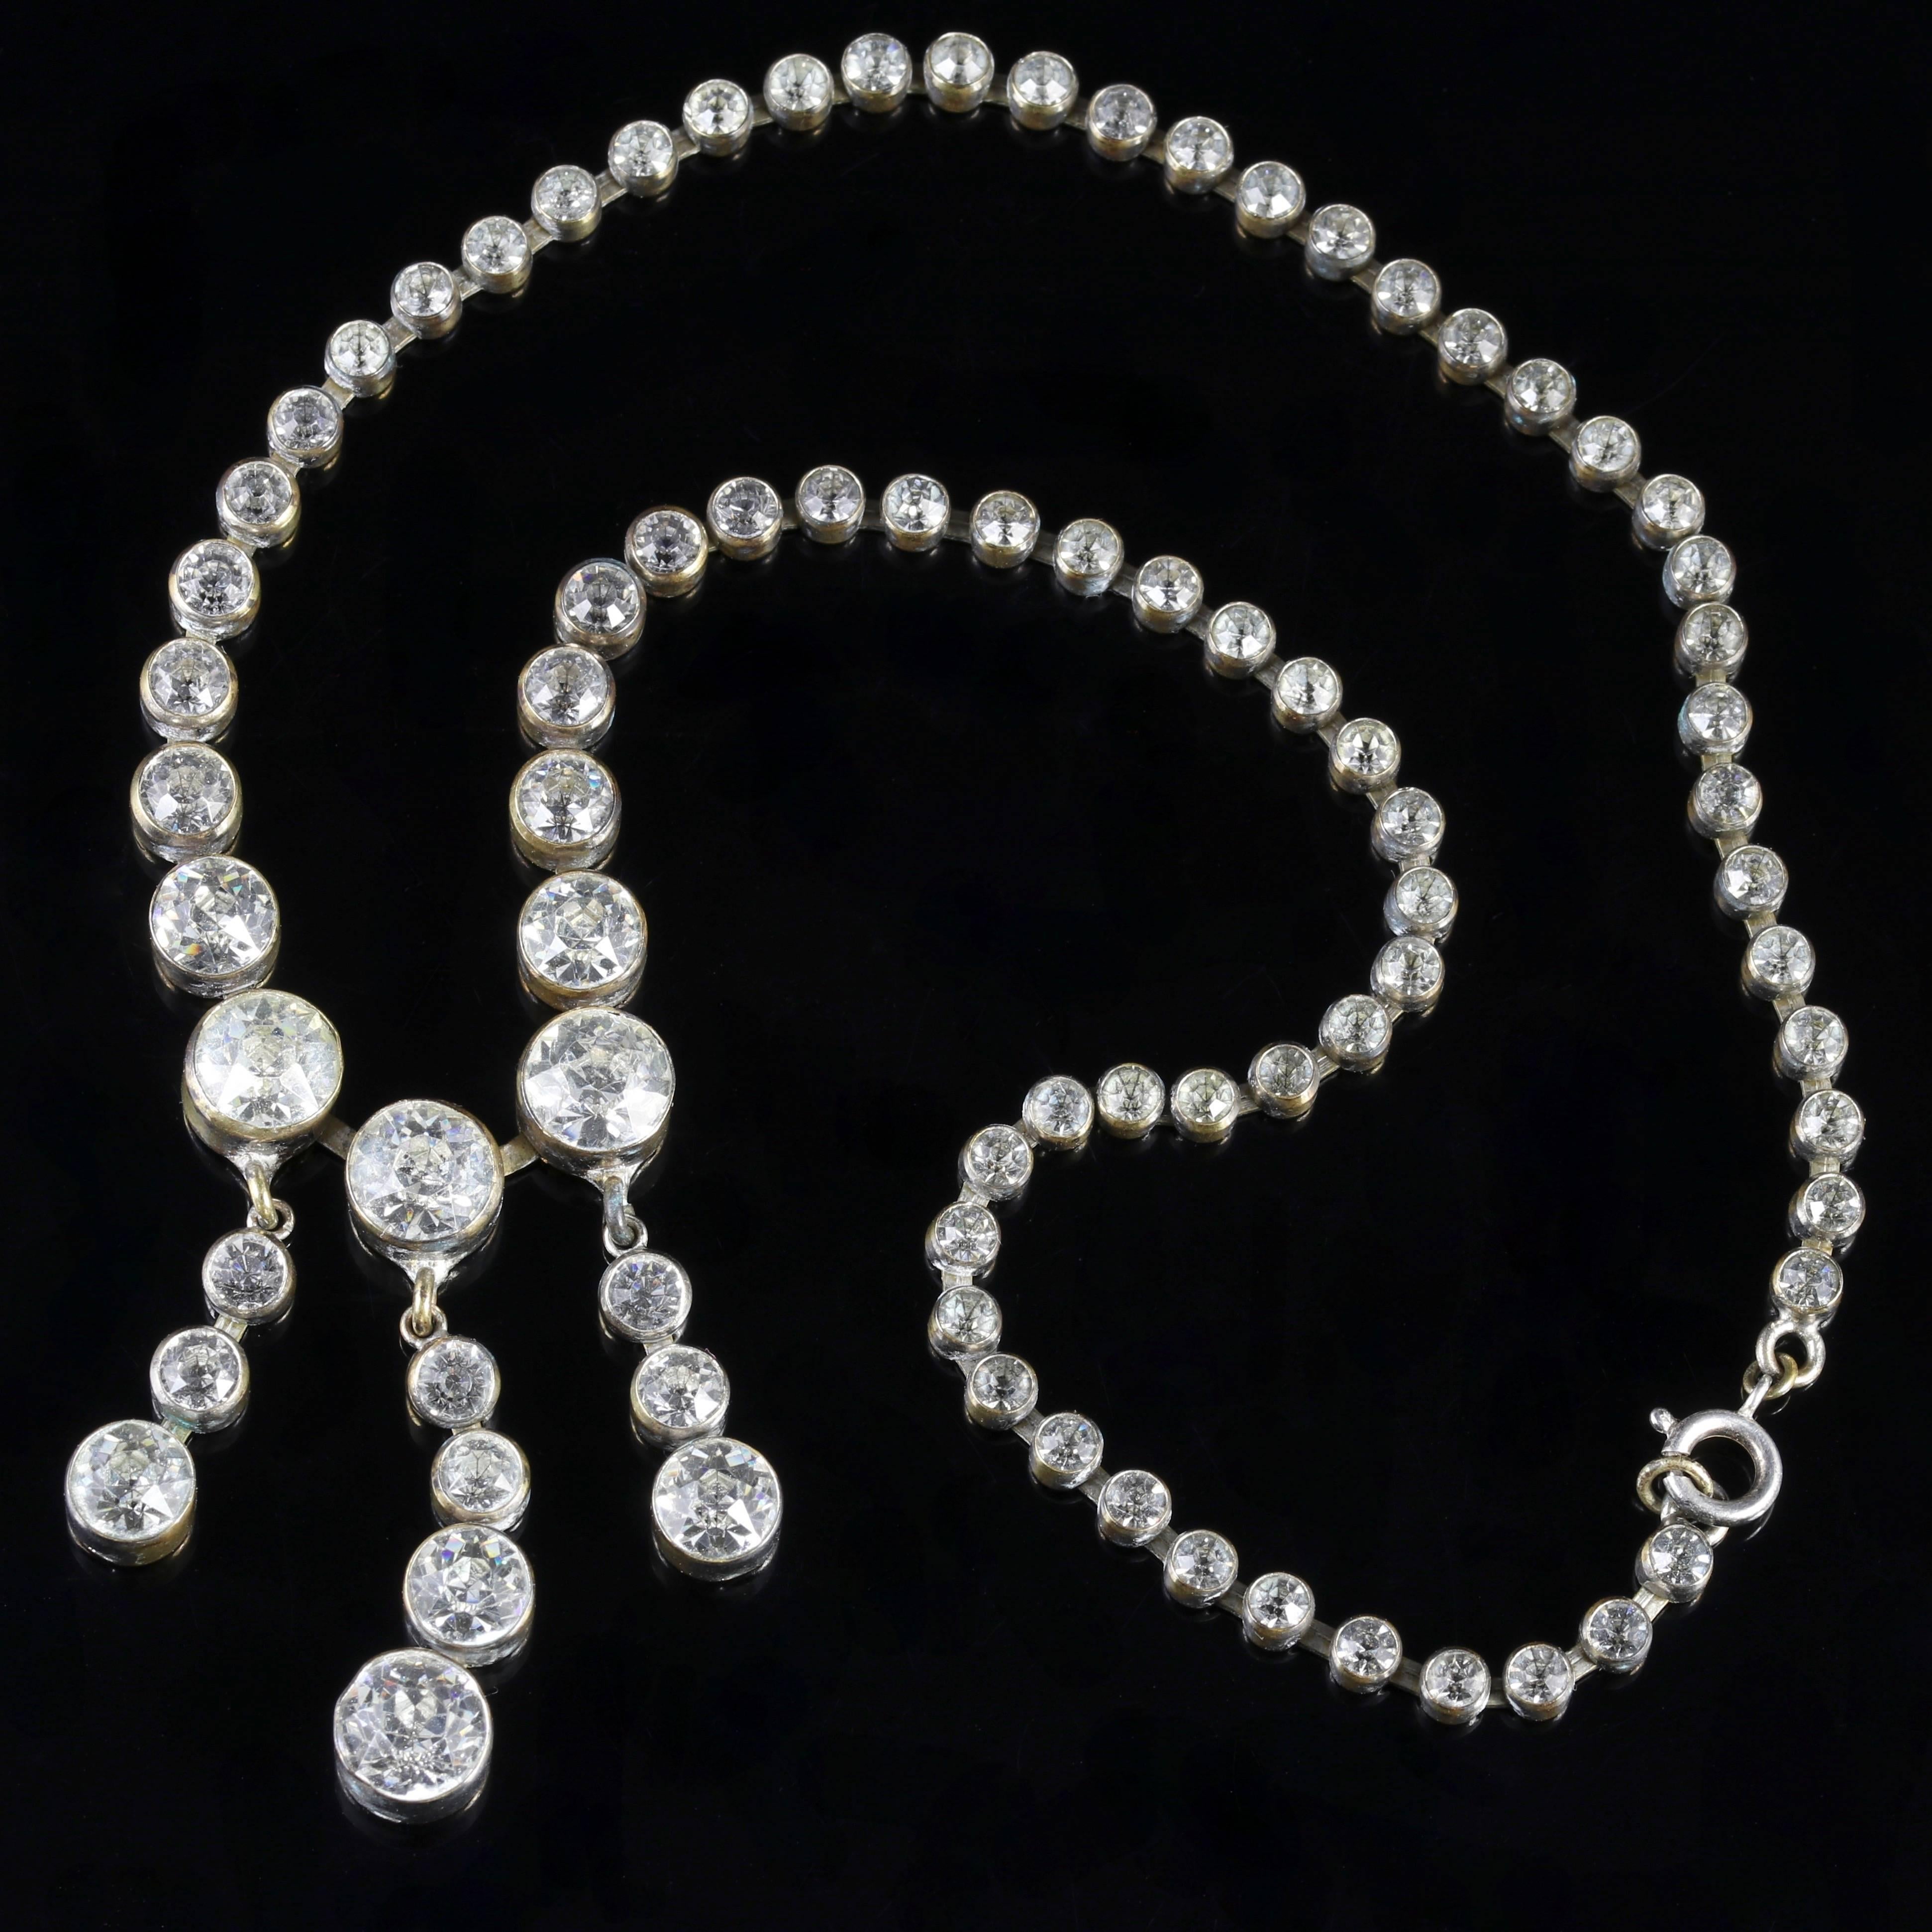 Women's Georgian Long Paste Cascading Necklace, circa 1800